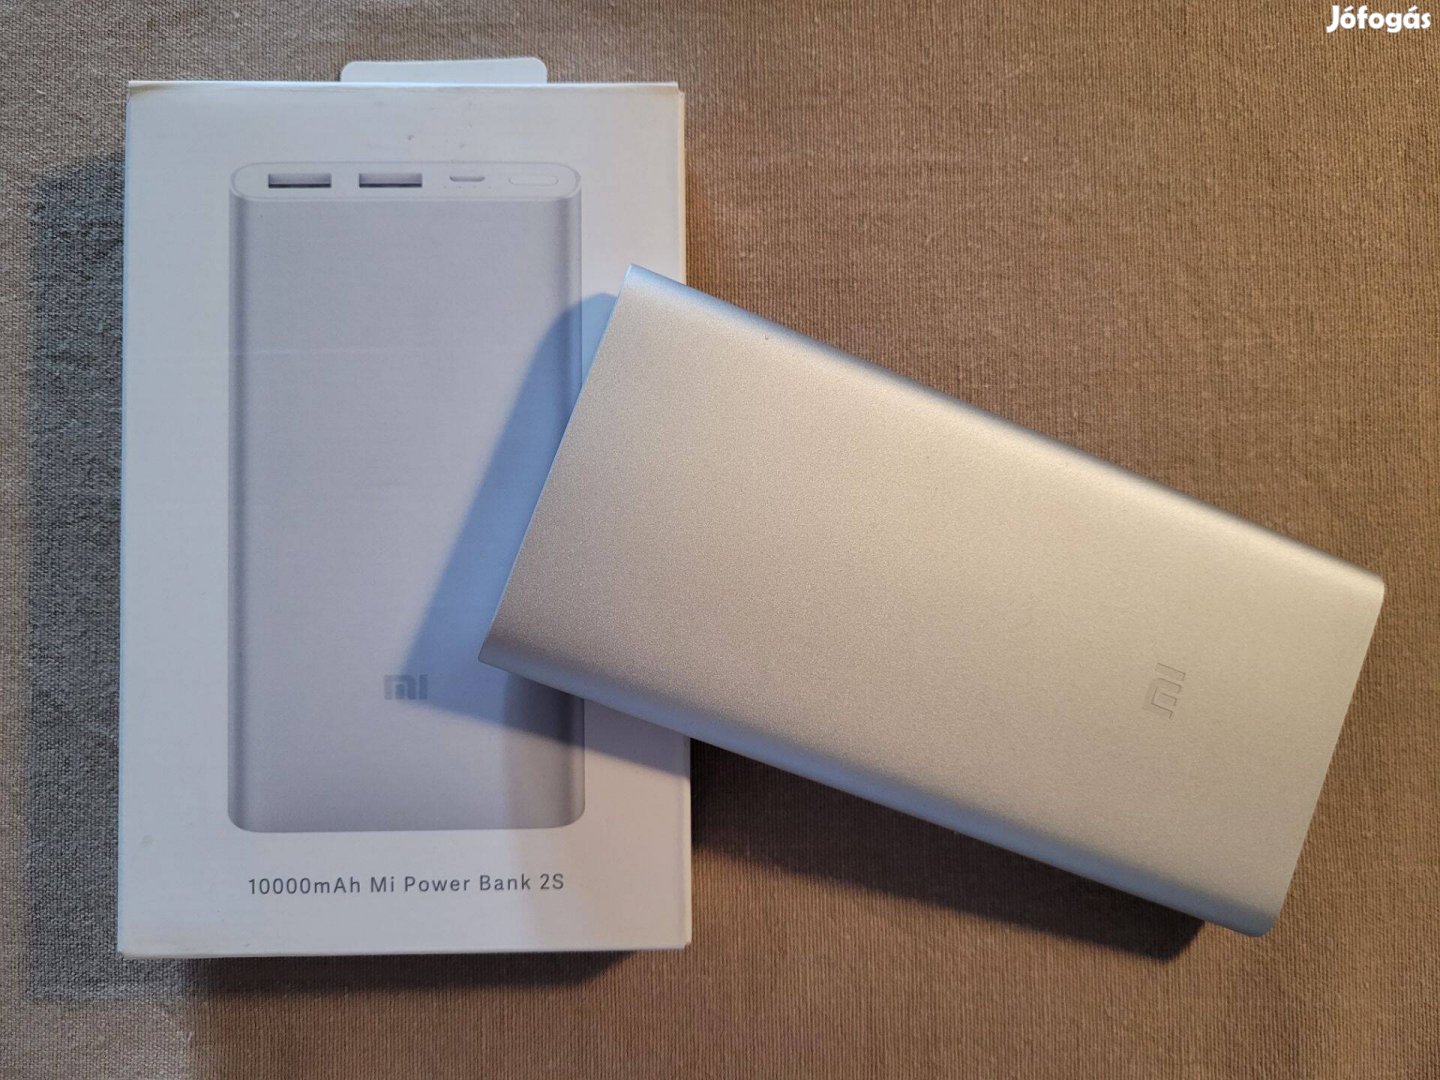 Xiaomi Mi Power Bank 2S 10000 mAh - ezüst színű, újszerű